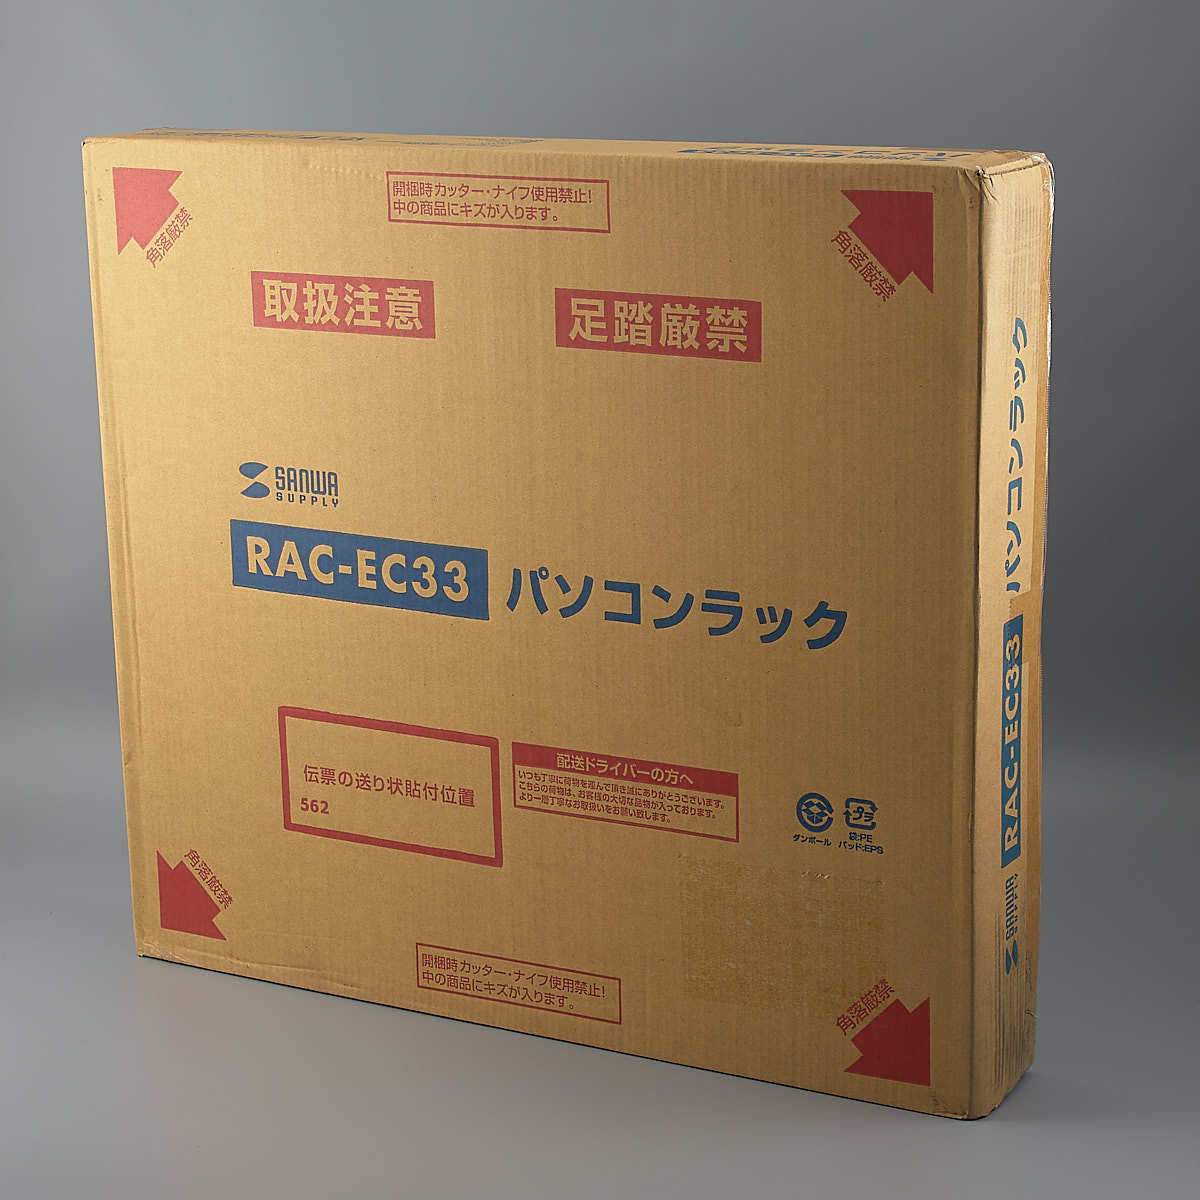 送料無料!! サンワ パソコンラック RAC-EC33 (W600×D600mm×H700mm) 未使用品 【ku】1